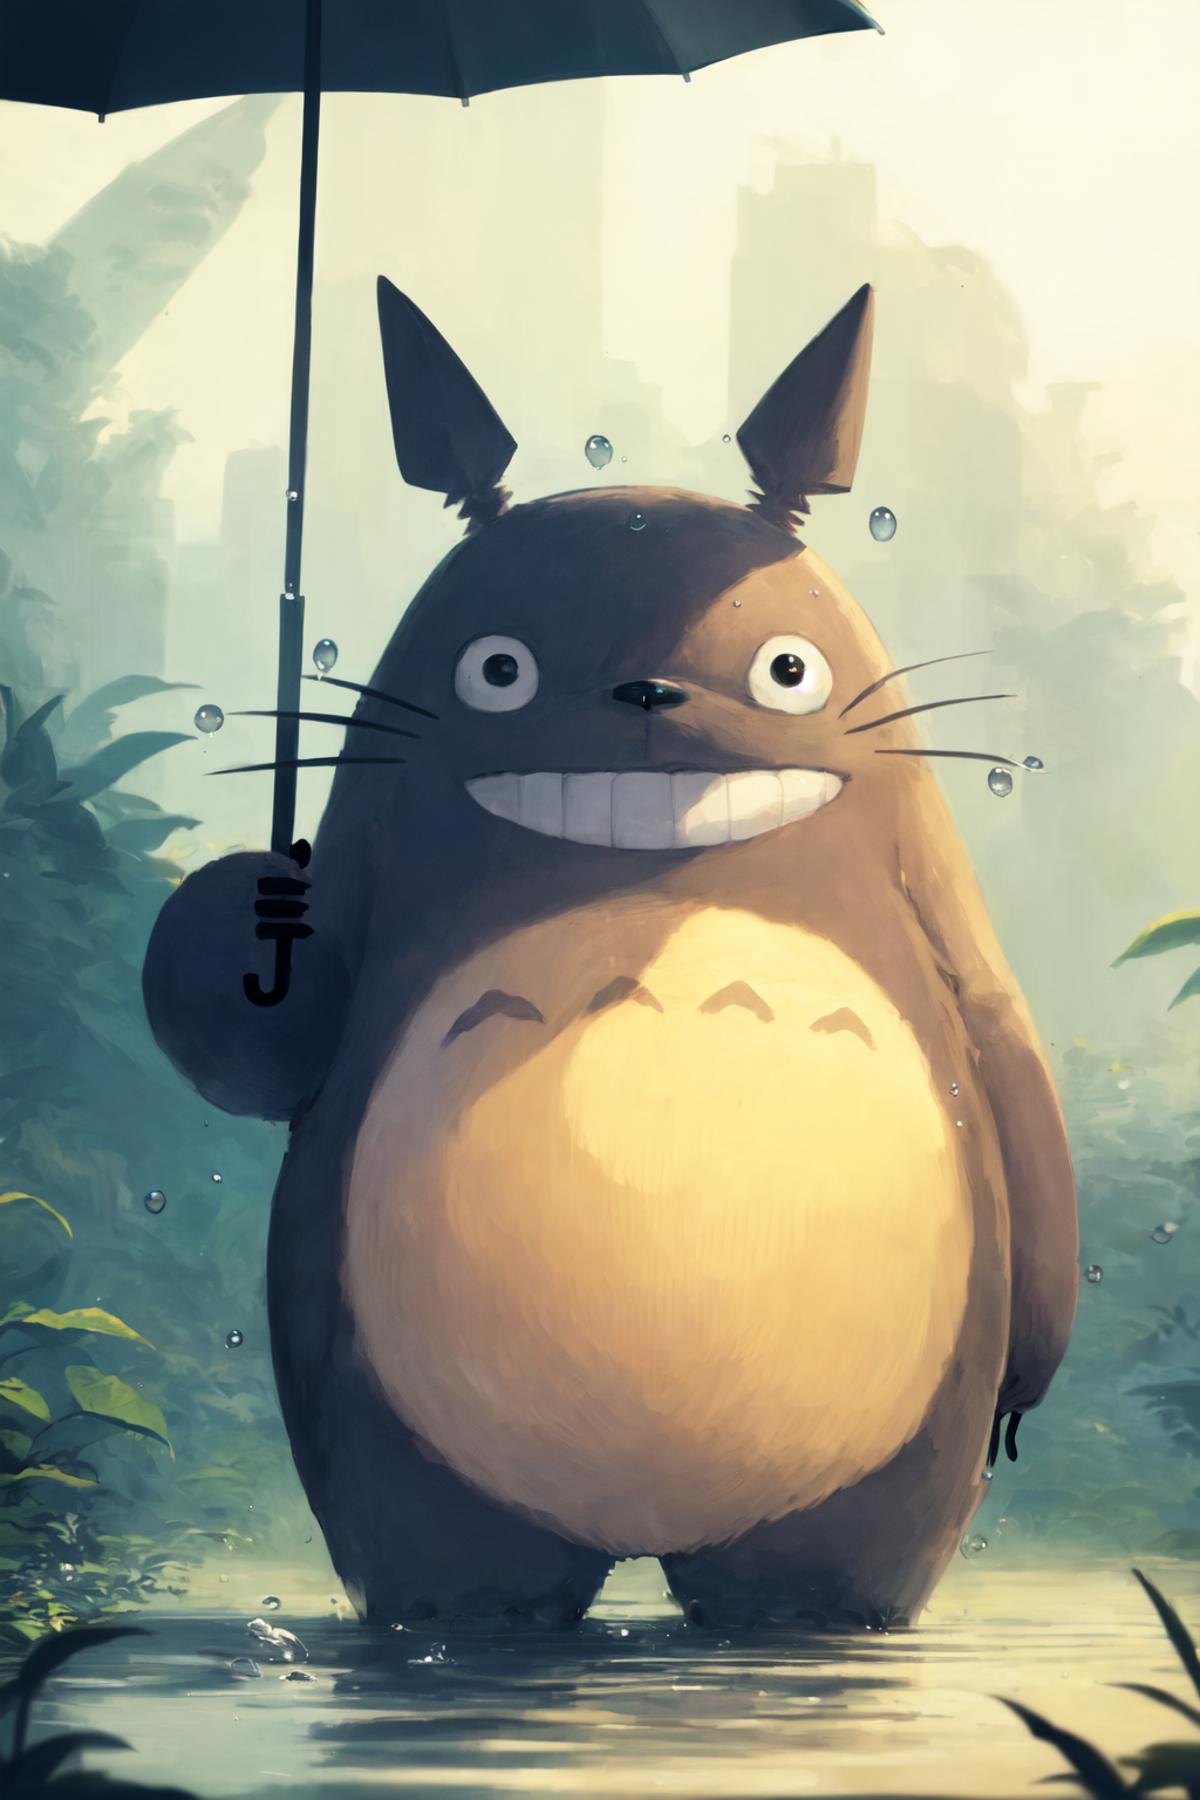 Totoro LoRA image by markwatkin